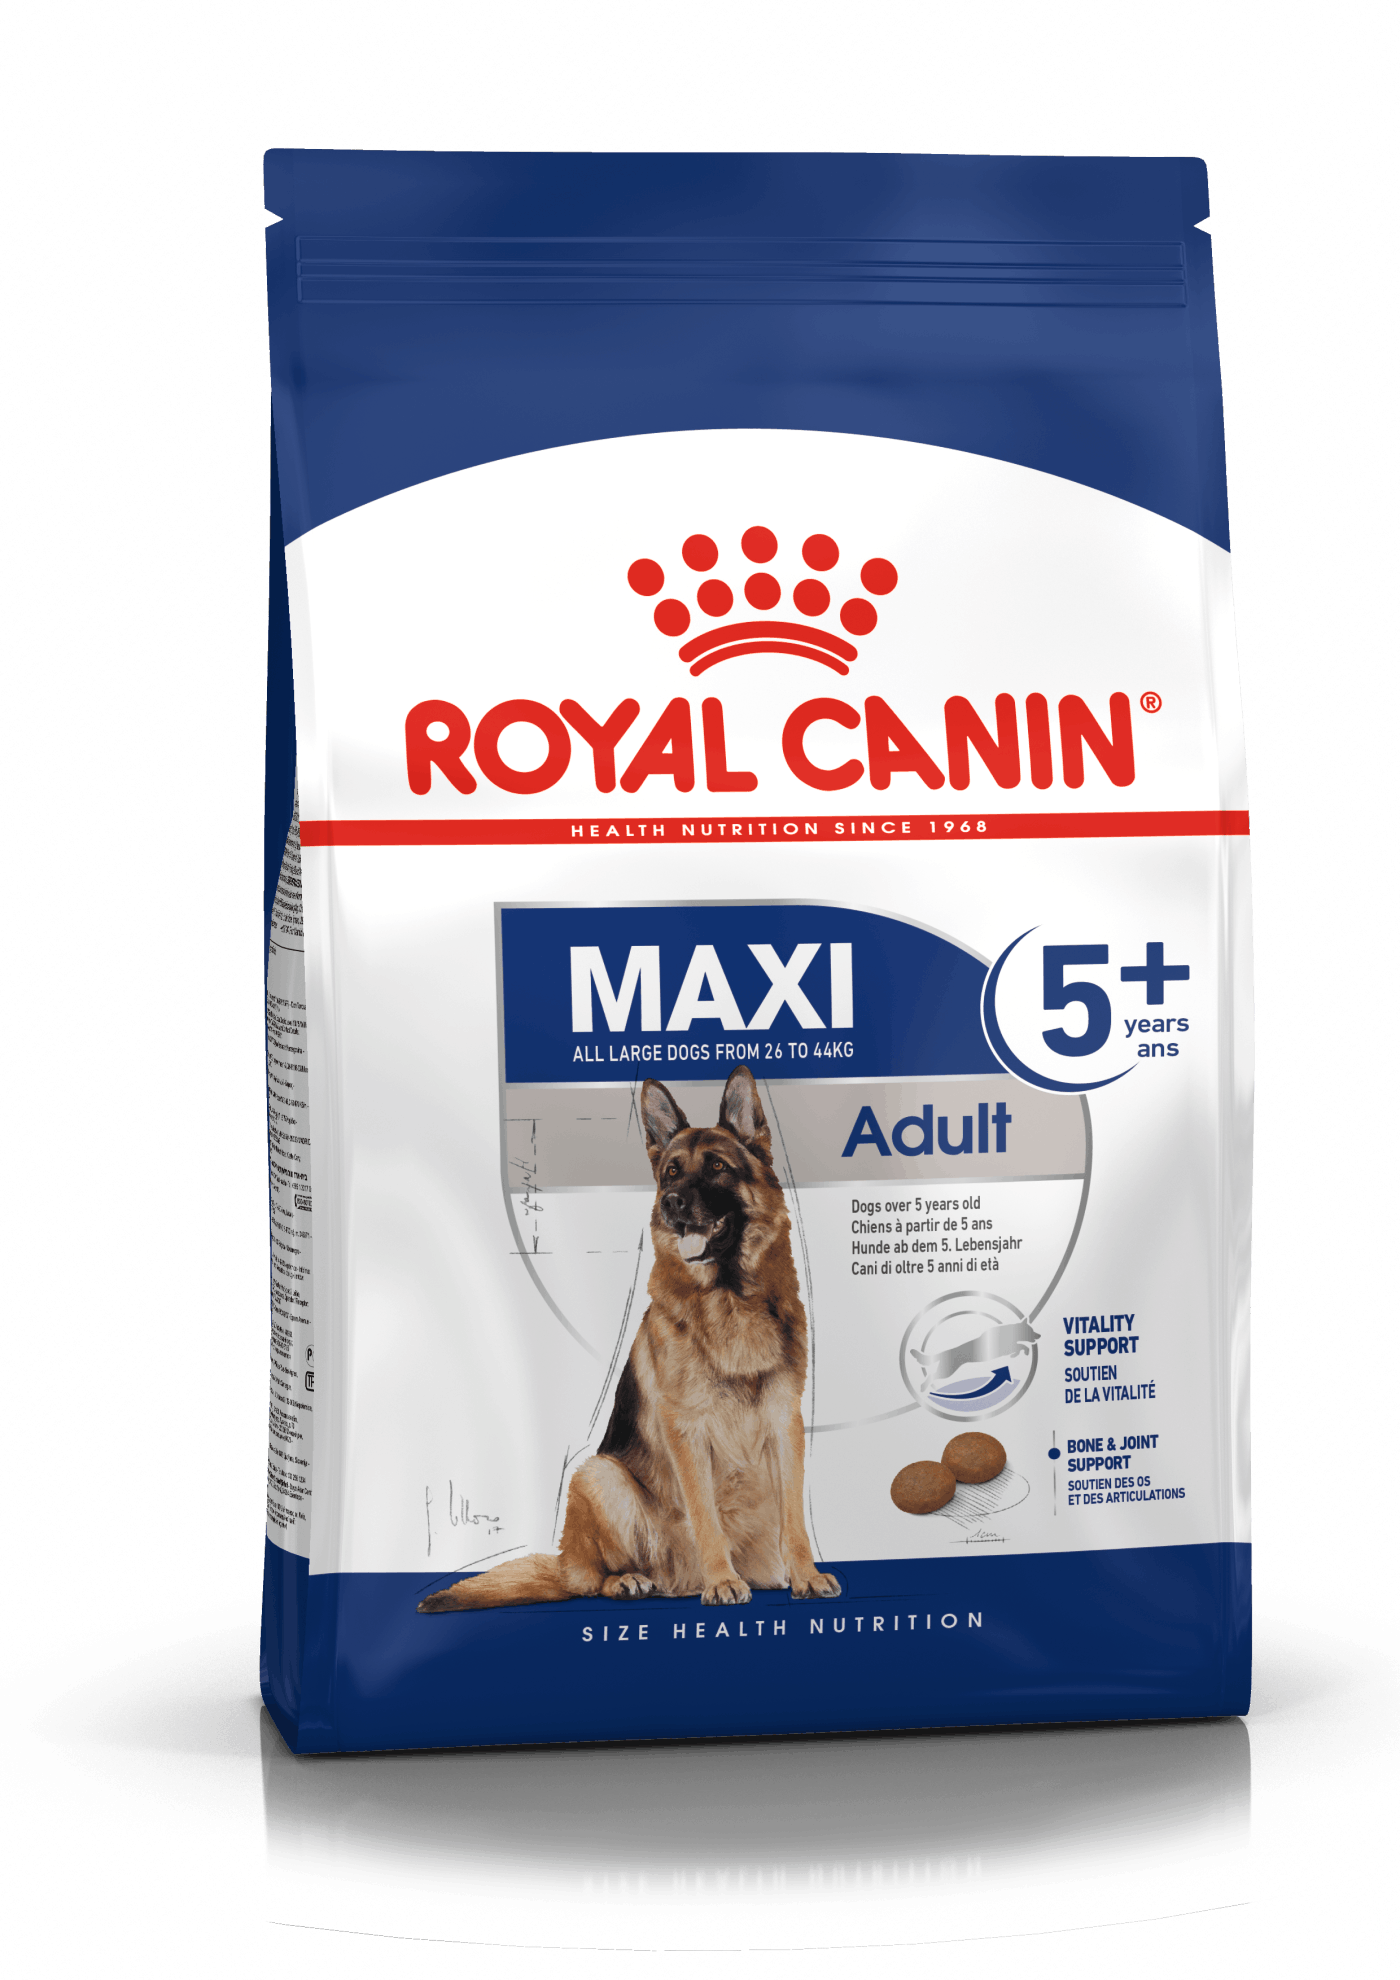 Royal Canin Maxi Adult 5+. Hunde over 5 år. 26-44kg. (15kg)